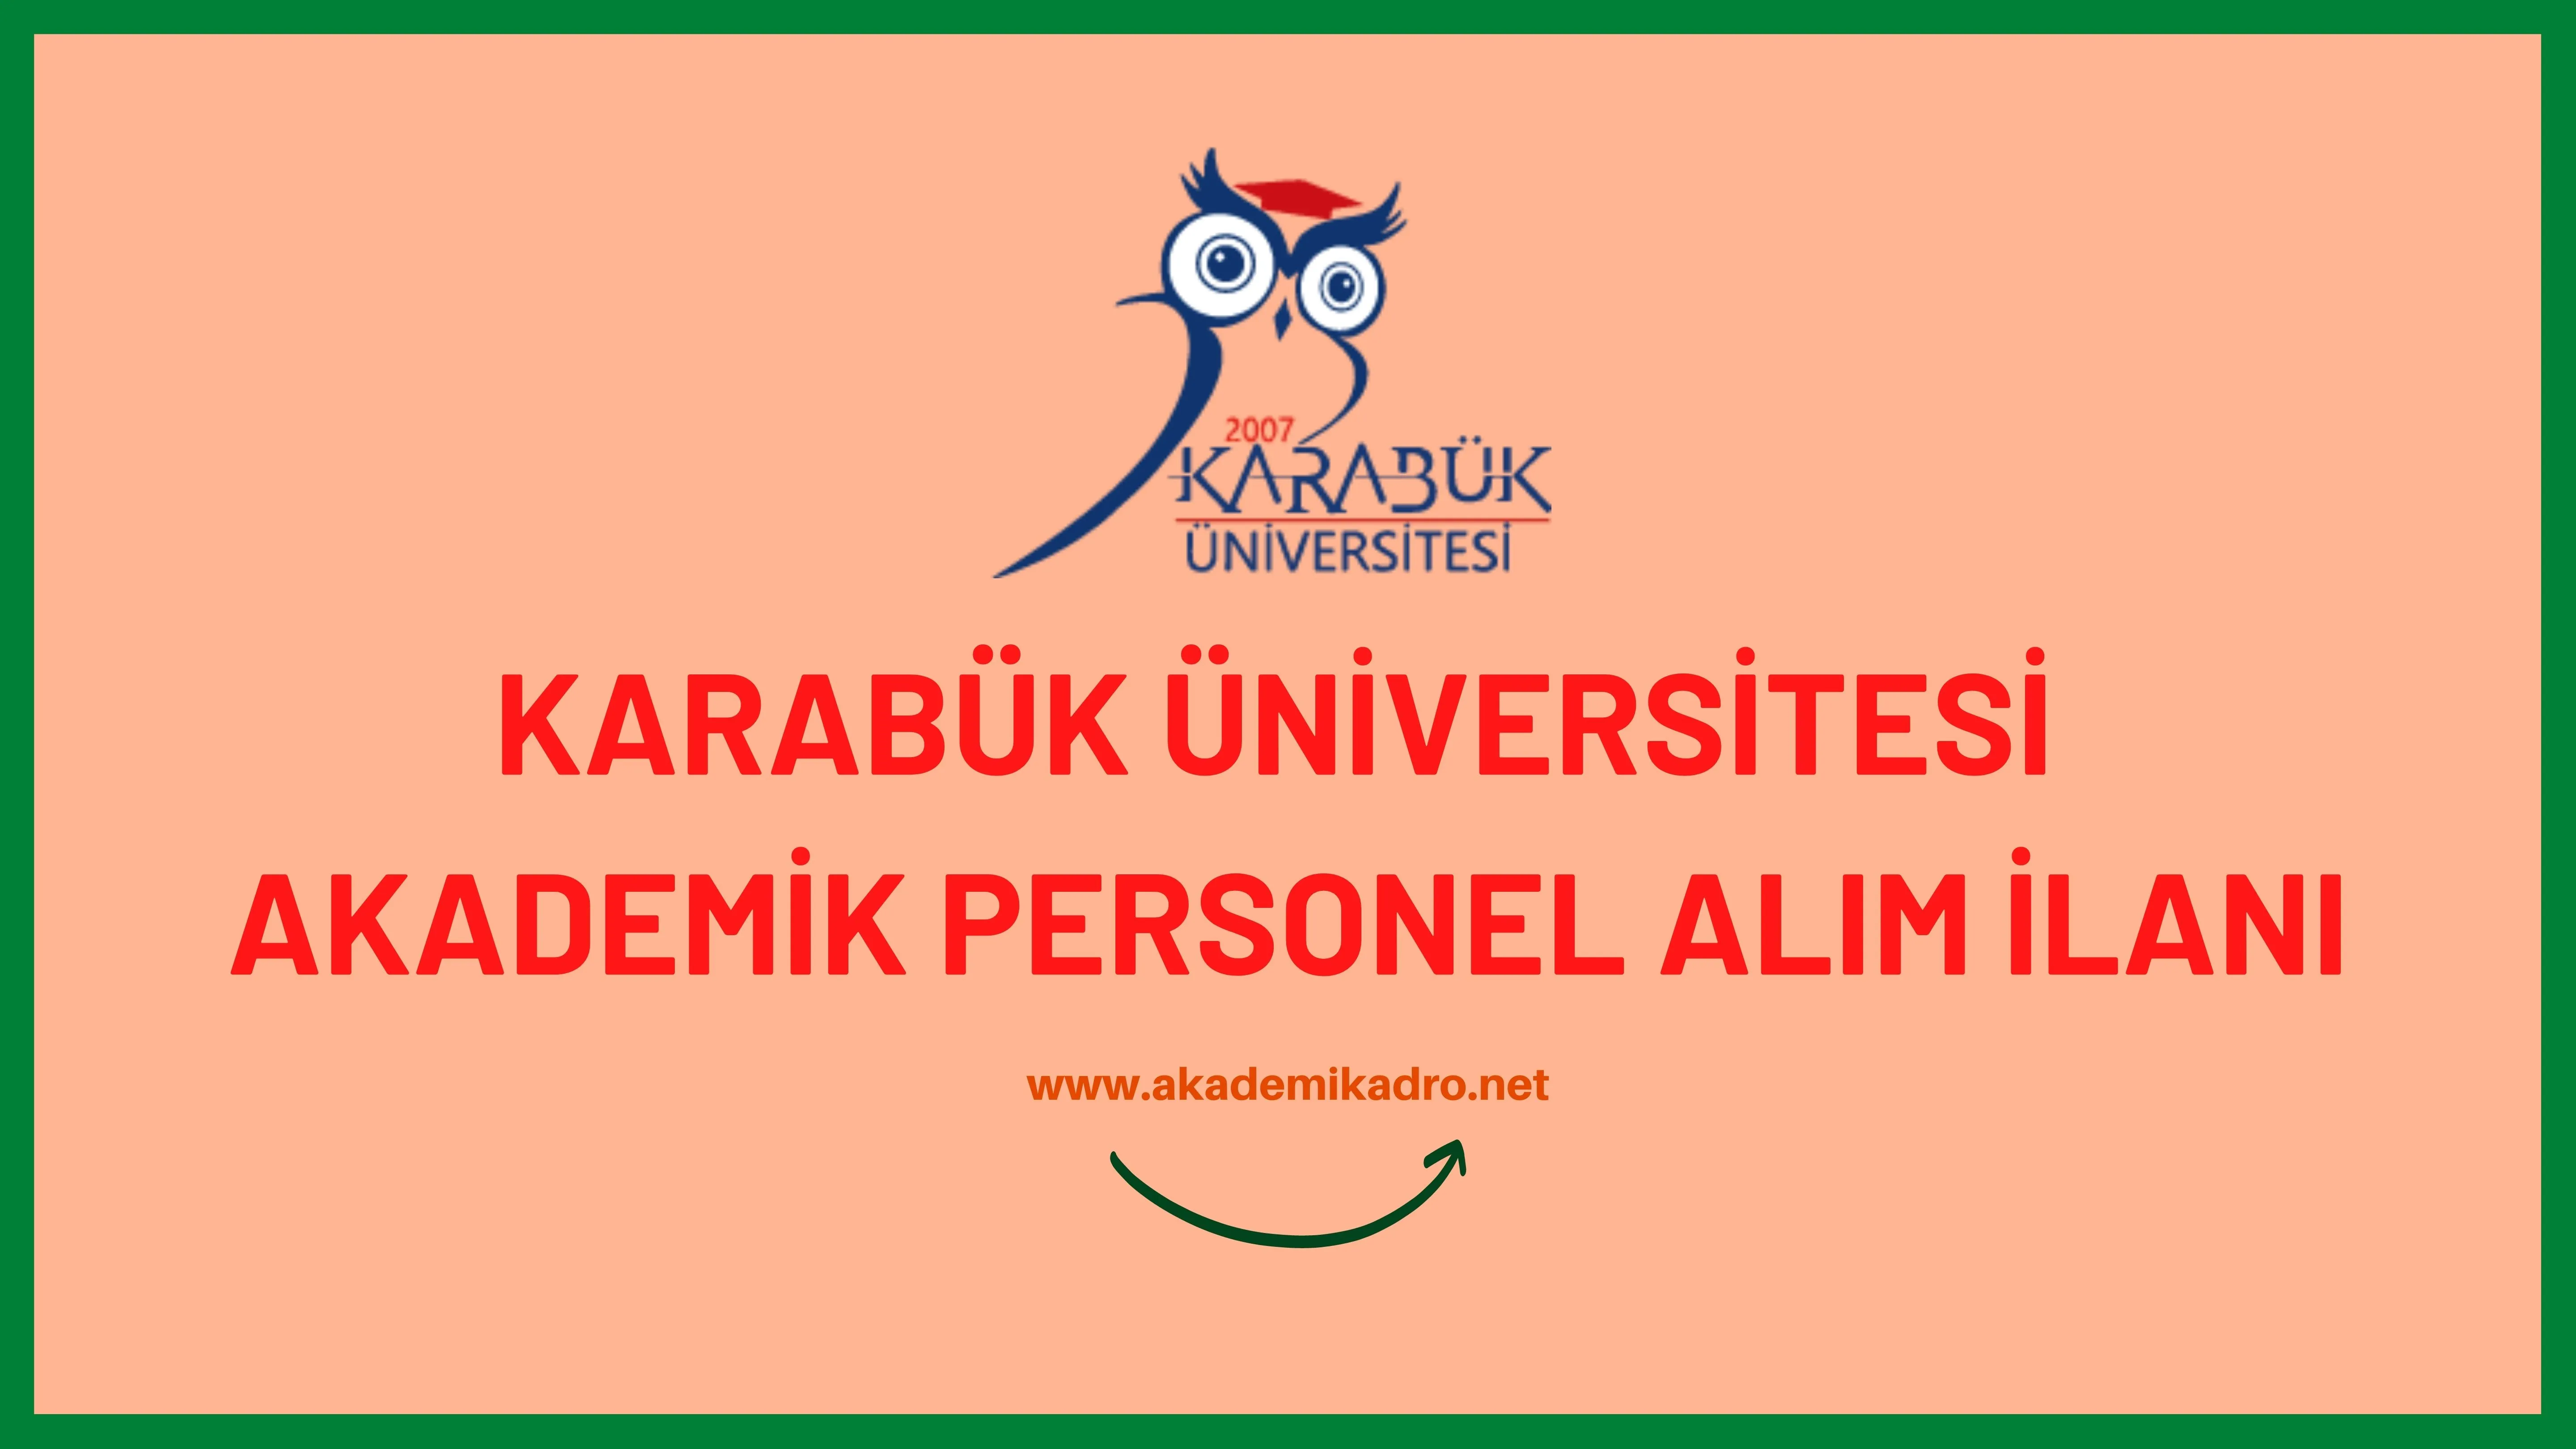 Karabük Üniversitesi çeşitli branşlarda 15 akademik personel alacak. Son başvuru tarihi 25 Kasım 2022.